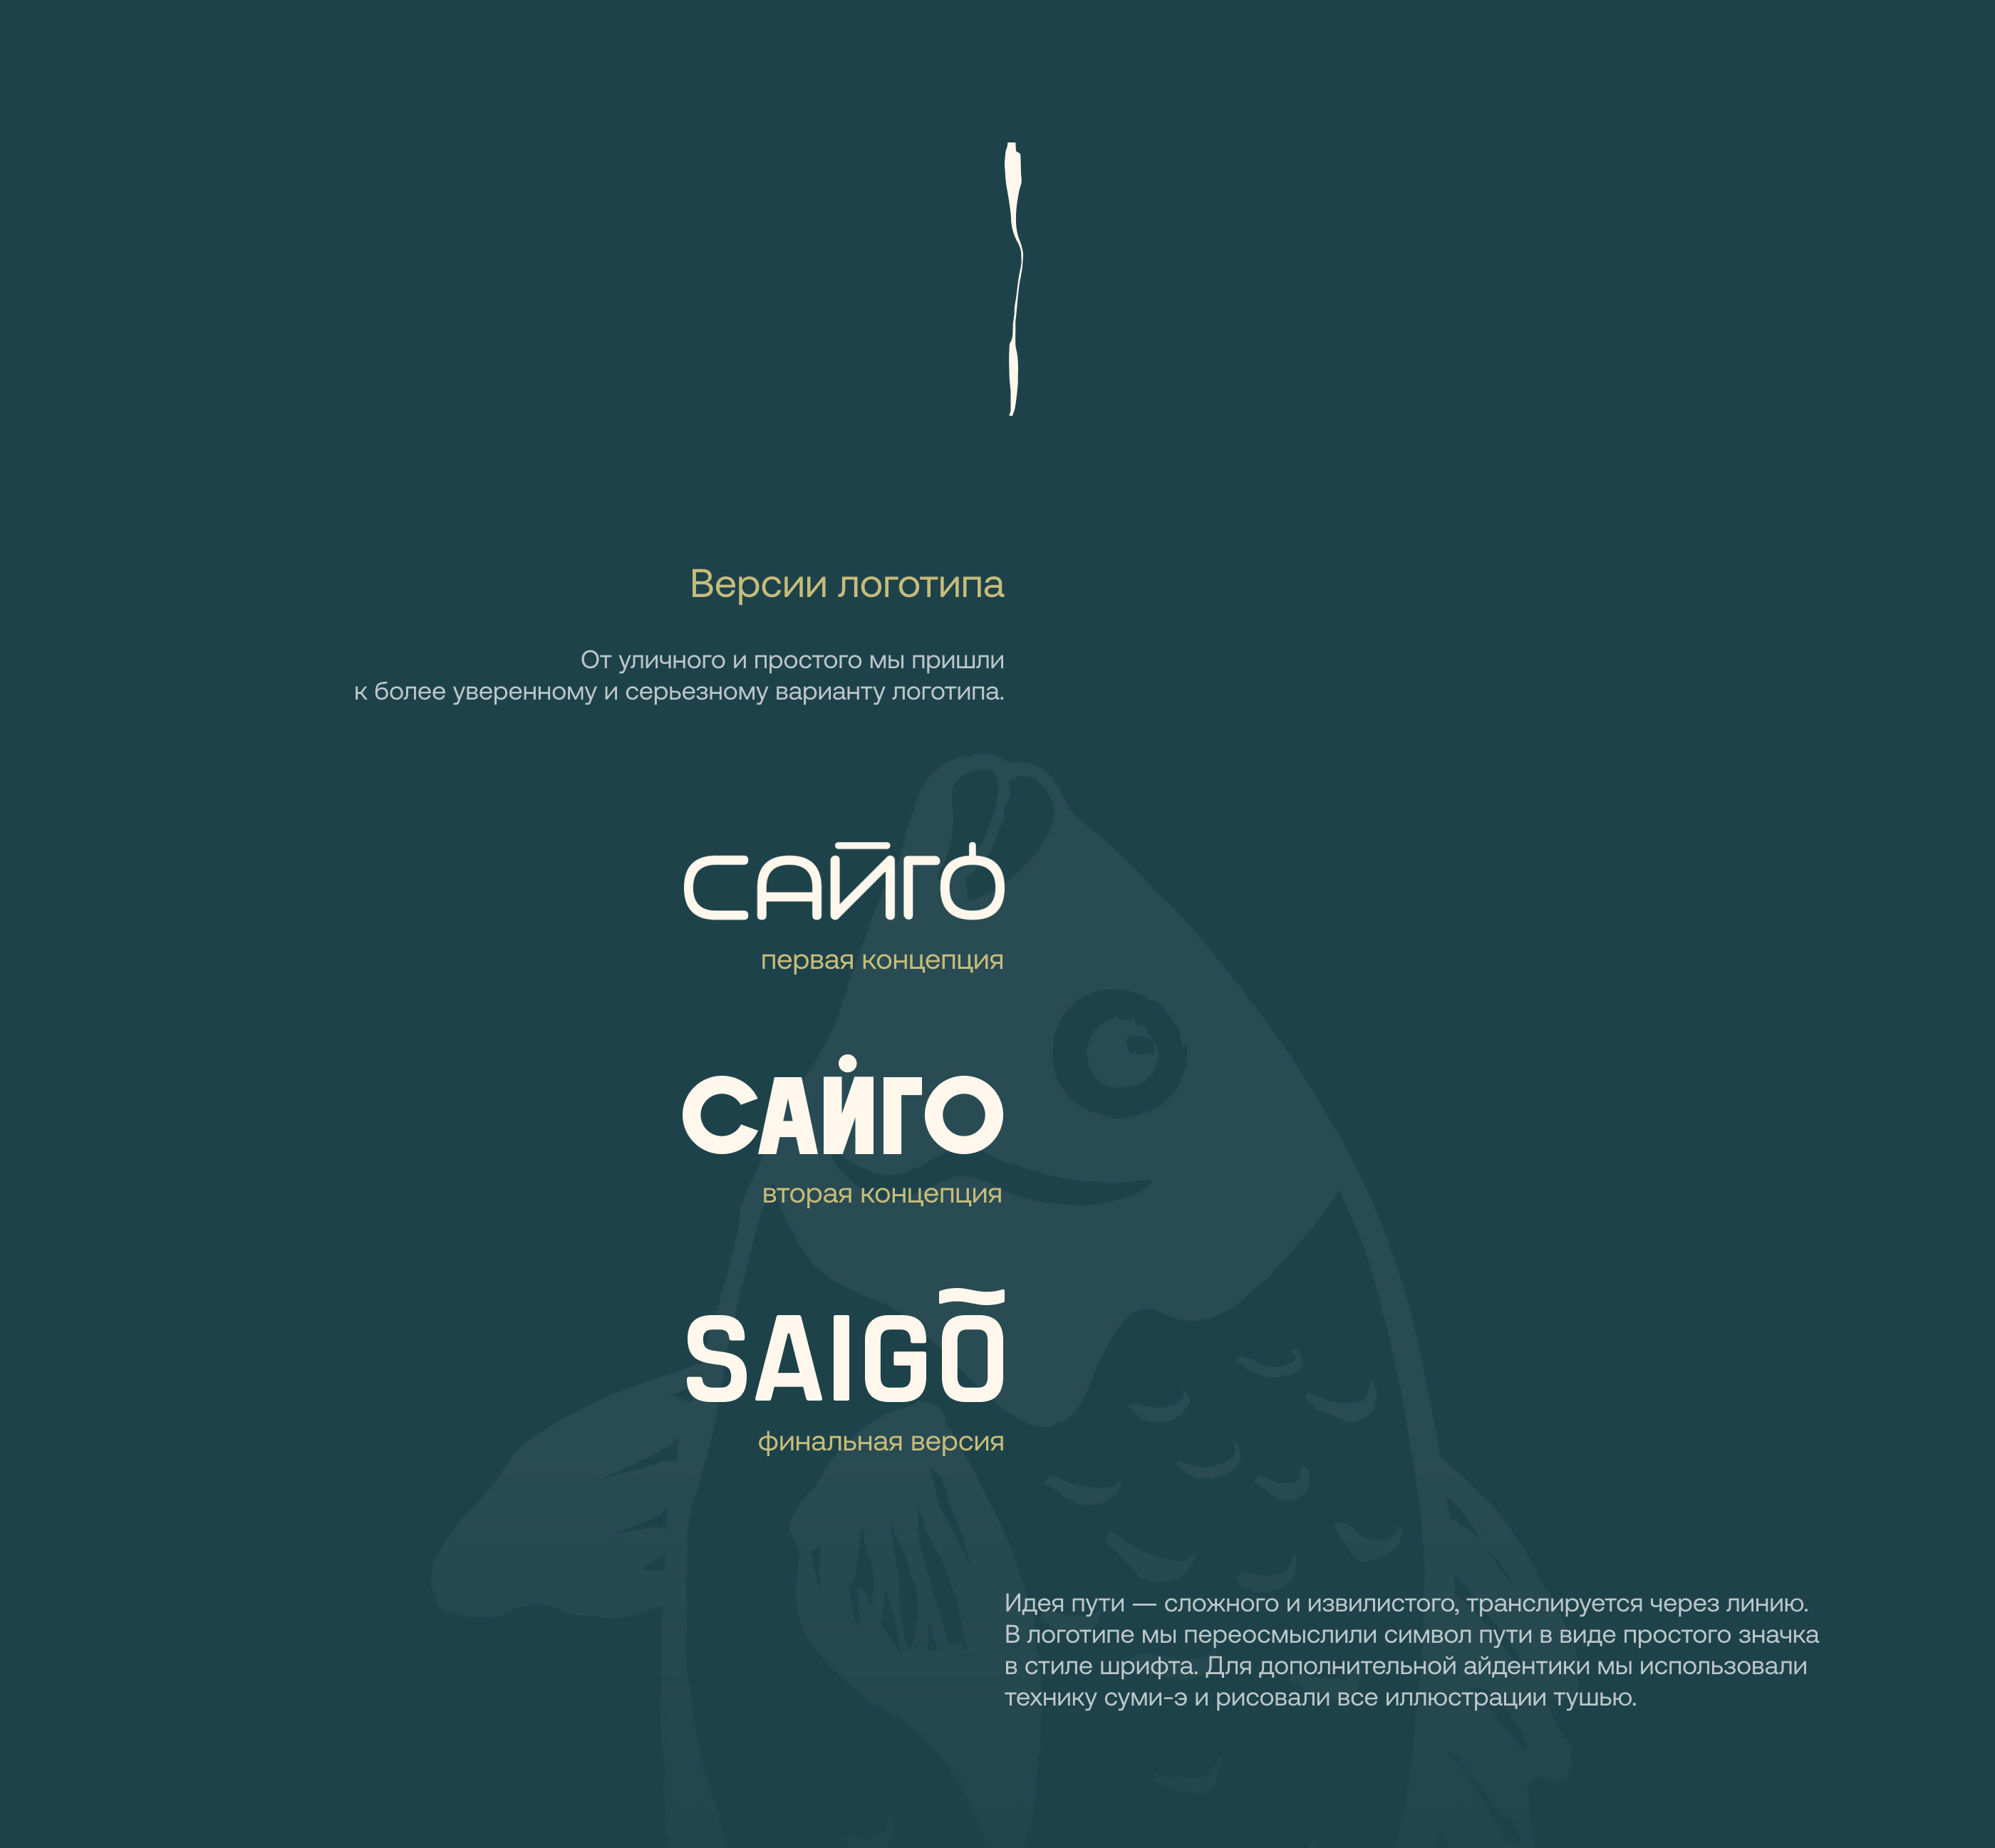 Лого & Айдентика для ресторана Saigo — Изображение №2 — Брендинг, Иллюстрация на Dprofile